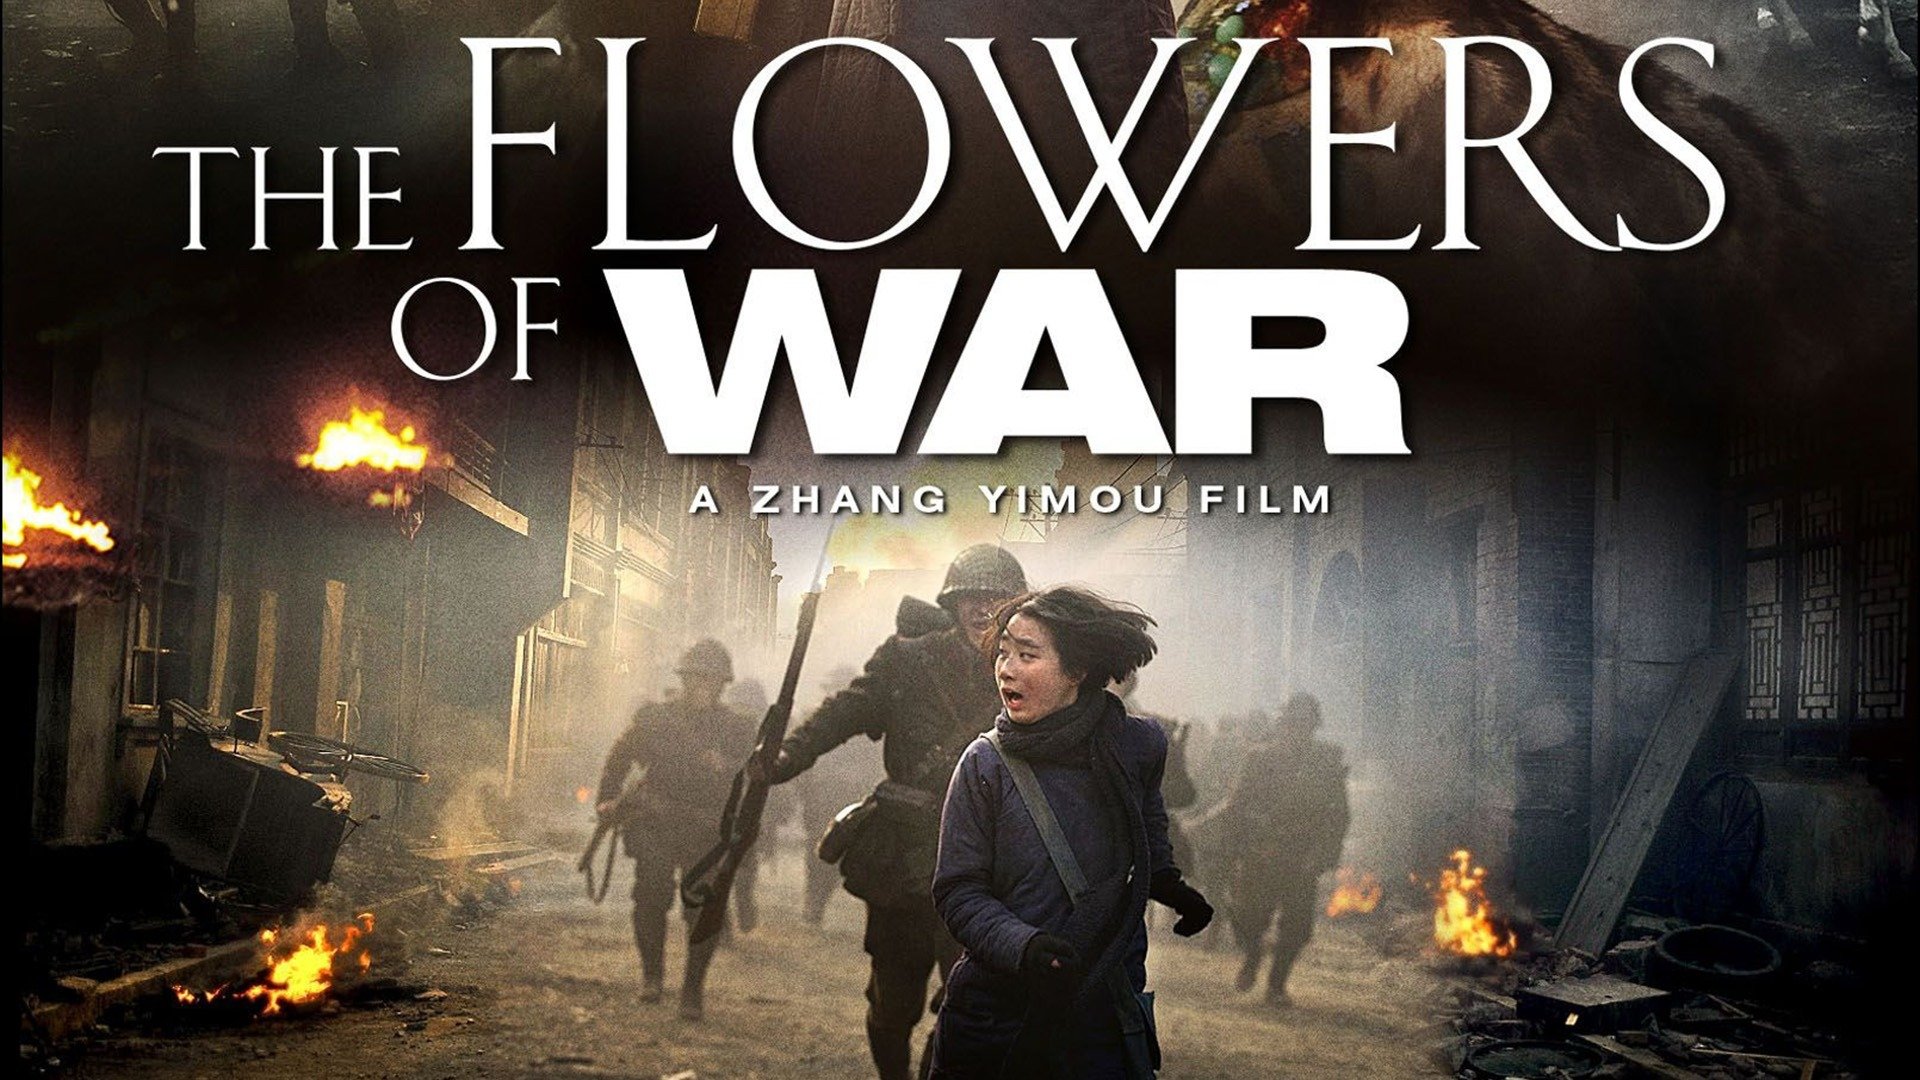 Bukan Film Bertema Perang Biasa, Namun Drama-Sejarah yang Ingin Menonjolkan Nilai Kemanusiaan (02)